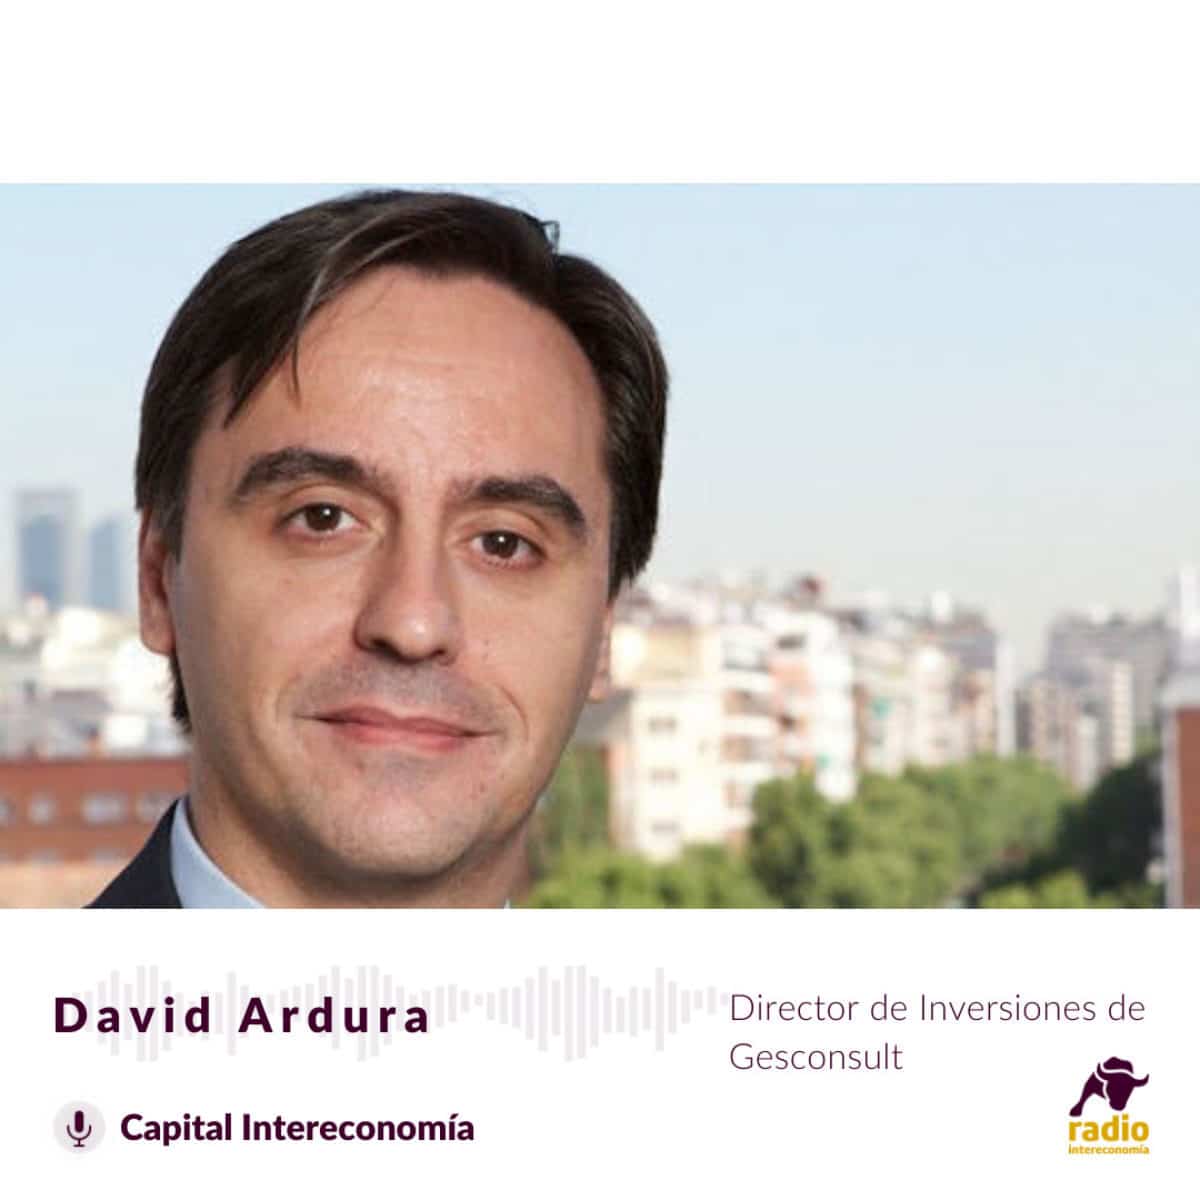 David Ardura, Director de Inversiones de Gesconsult